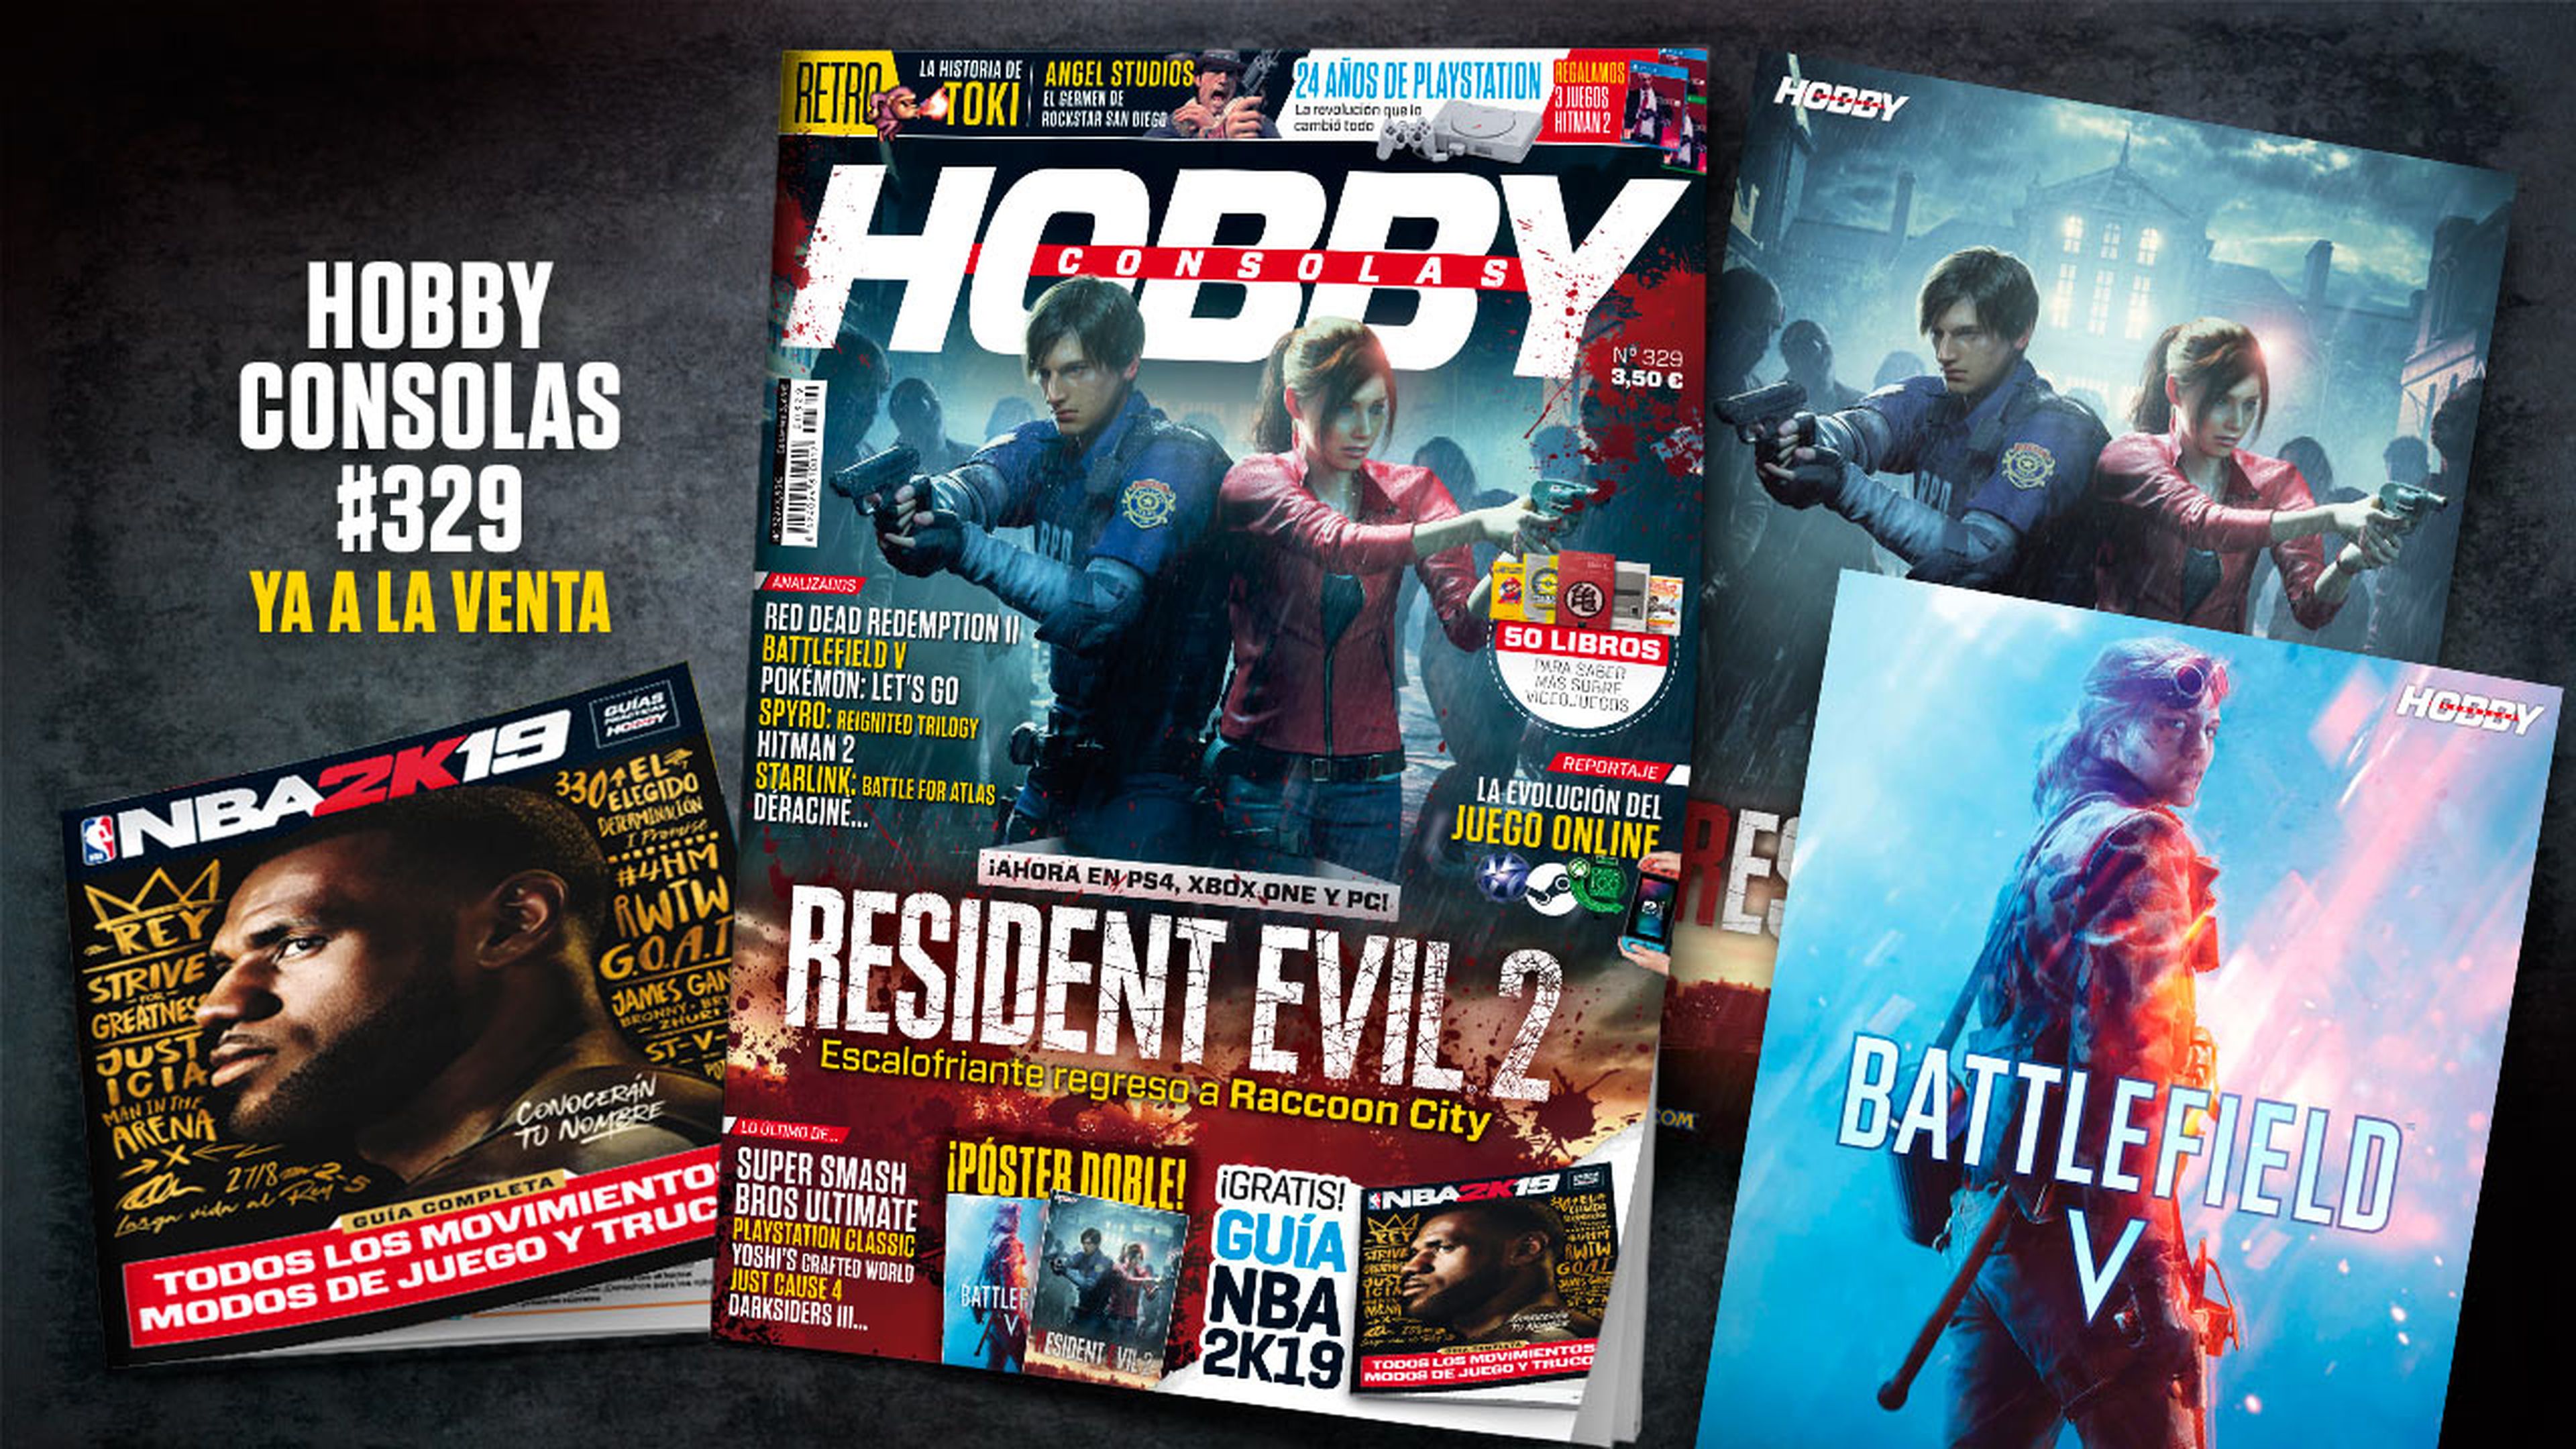 Hobby Consolas 329, a la venta con pósters de Resident Evil 2 y Battlefield V